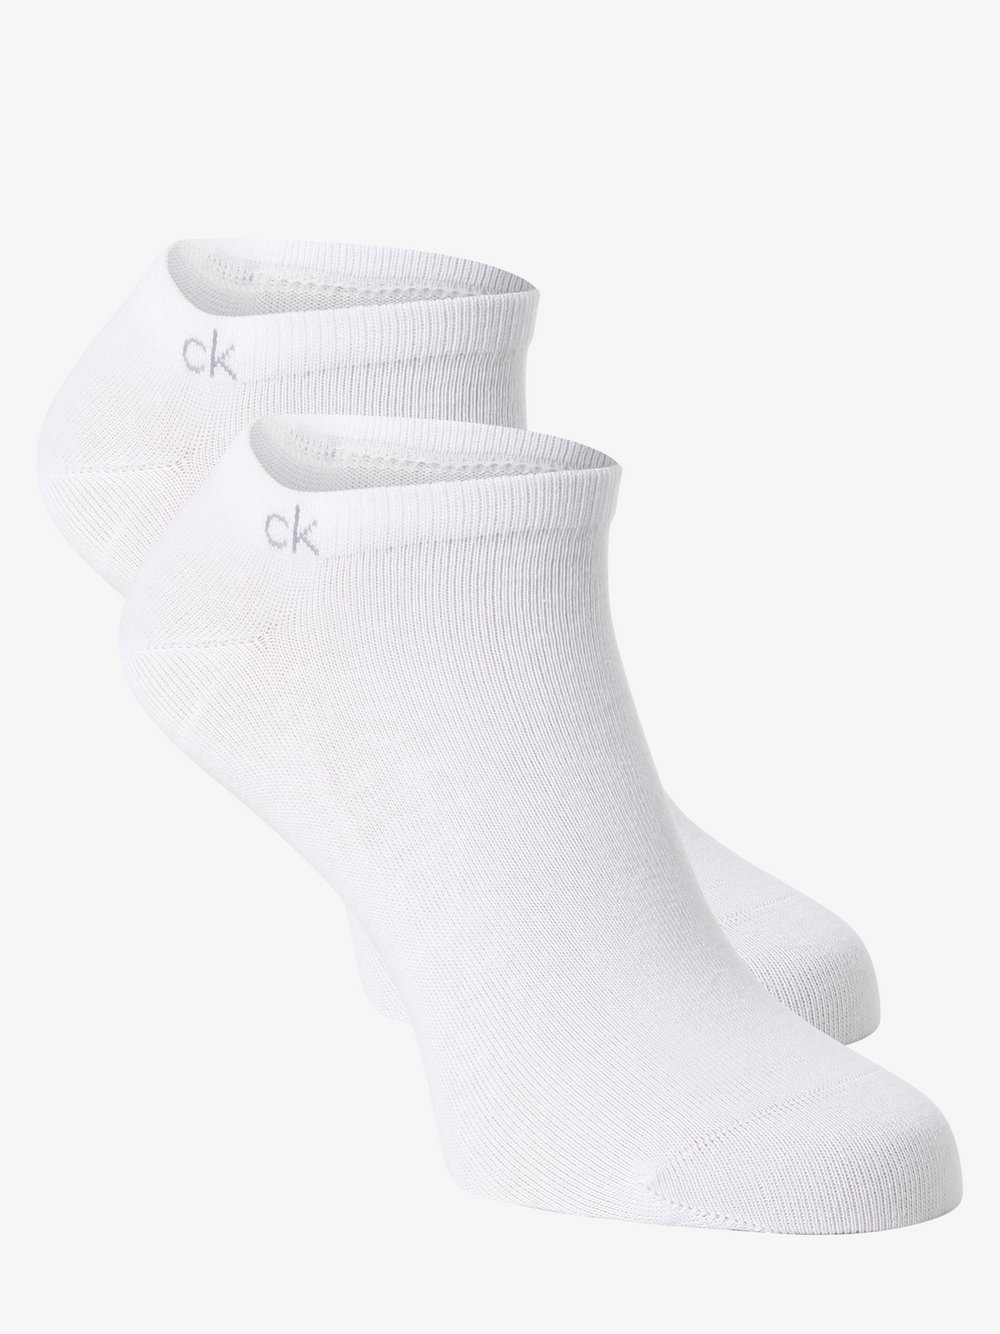 Calvin Klein - Damskie skarpety do obuwia sportowego pakowane po 2 szt., biały